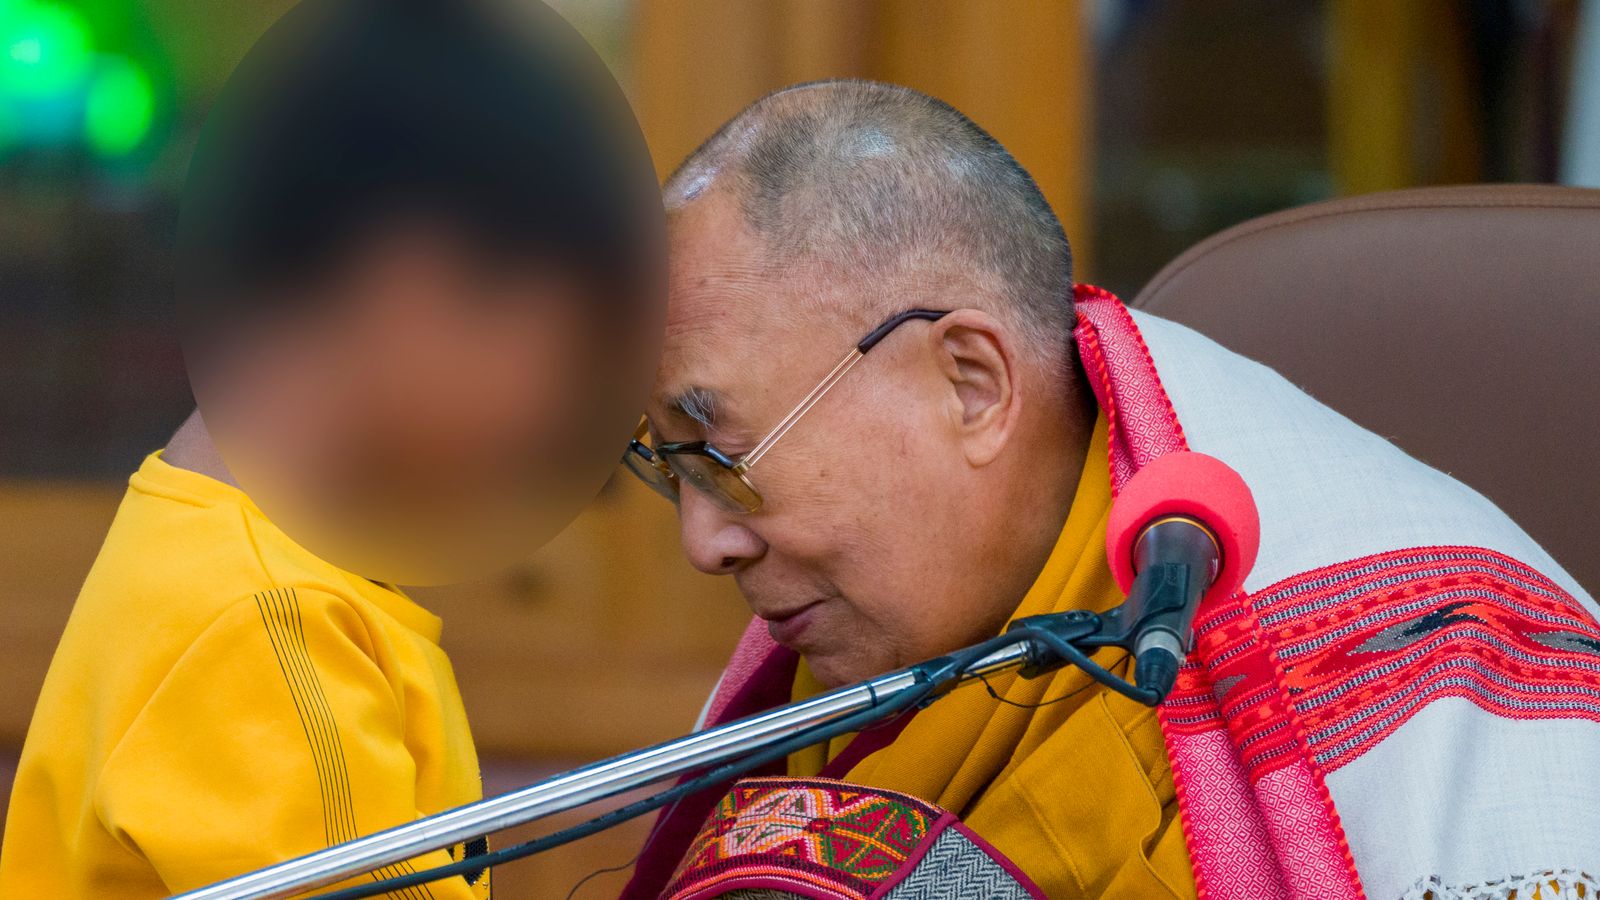 Dalai Lama apologises after kissing boy and asking him to 'suck my tongue'